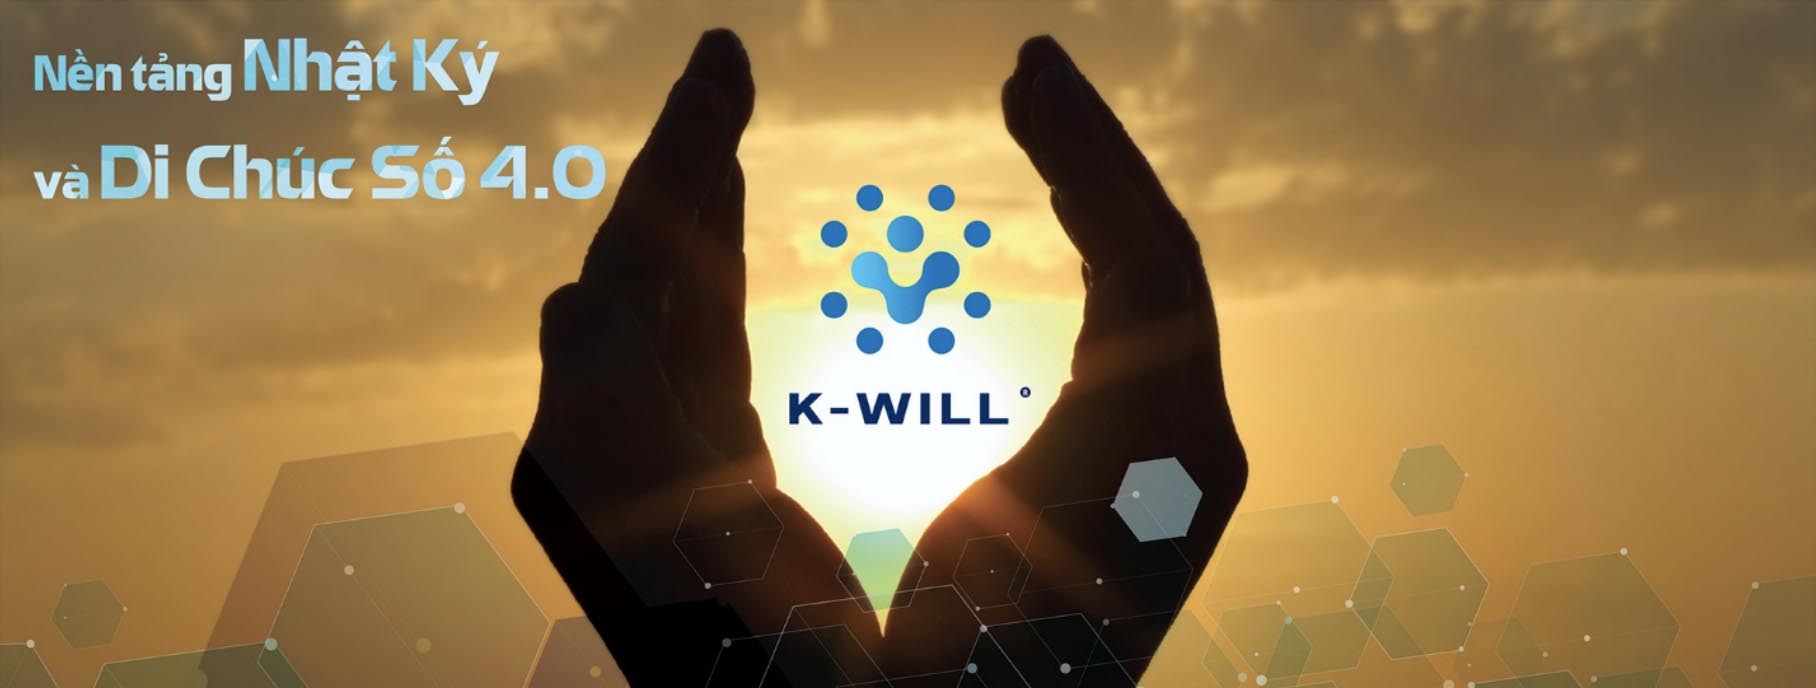 Lần đầu tiên ra mắt K-Will - Nền tảng Nhật ký và Di chúc số 4.0